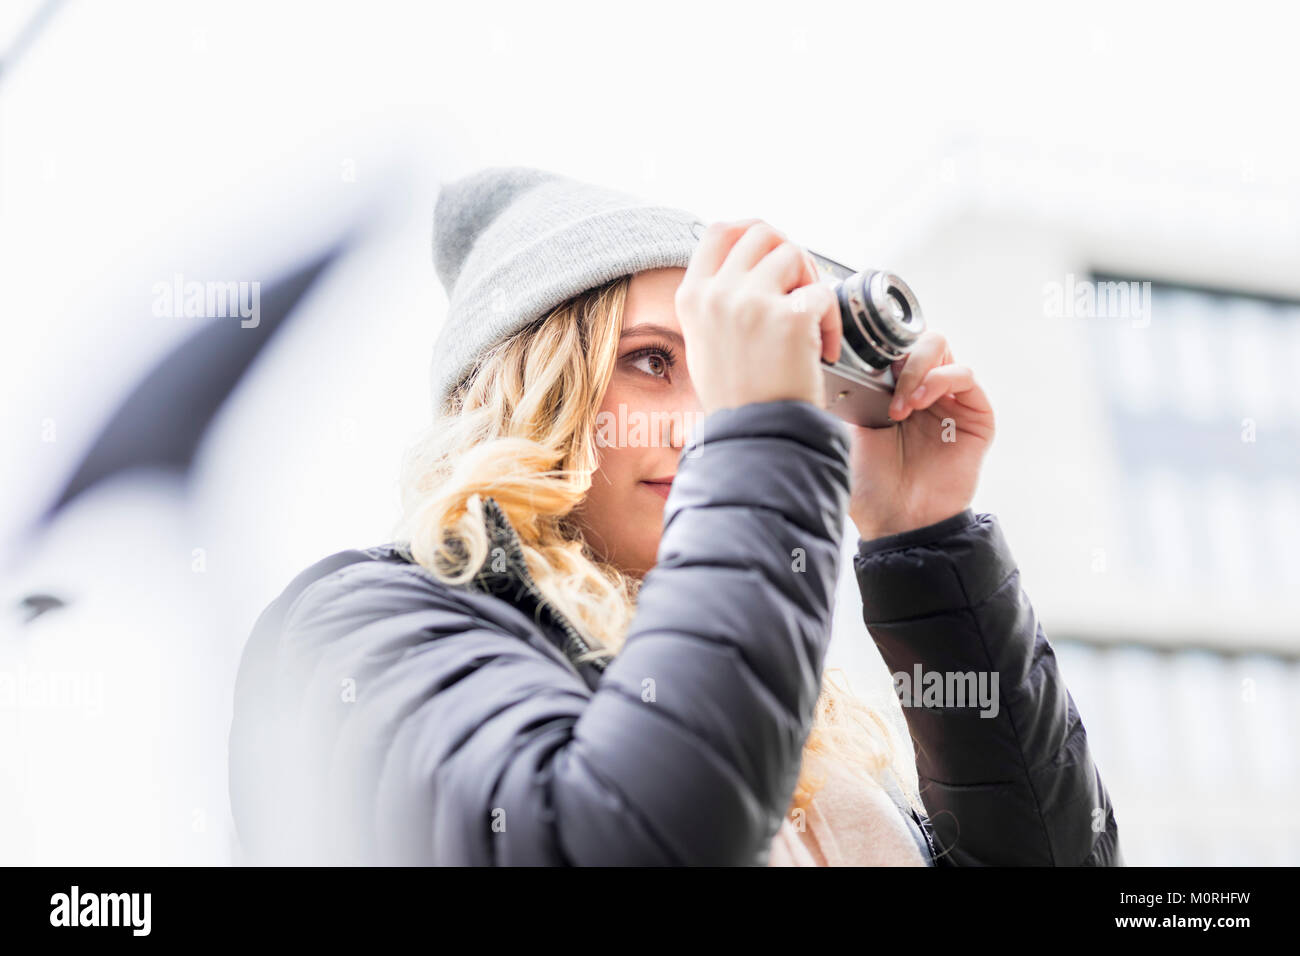 Young woman taking photo avec l'appareil photo vintage Banque D'Images